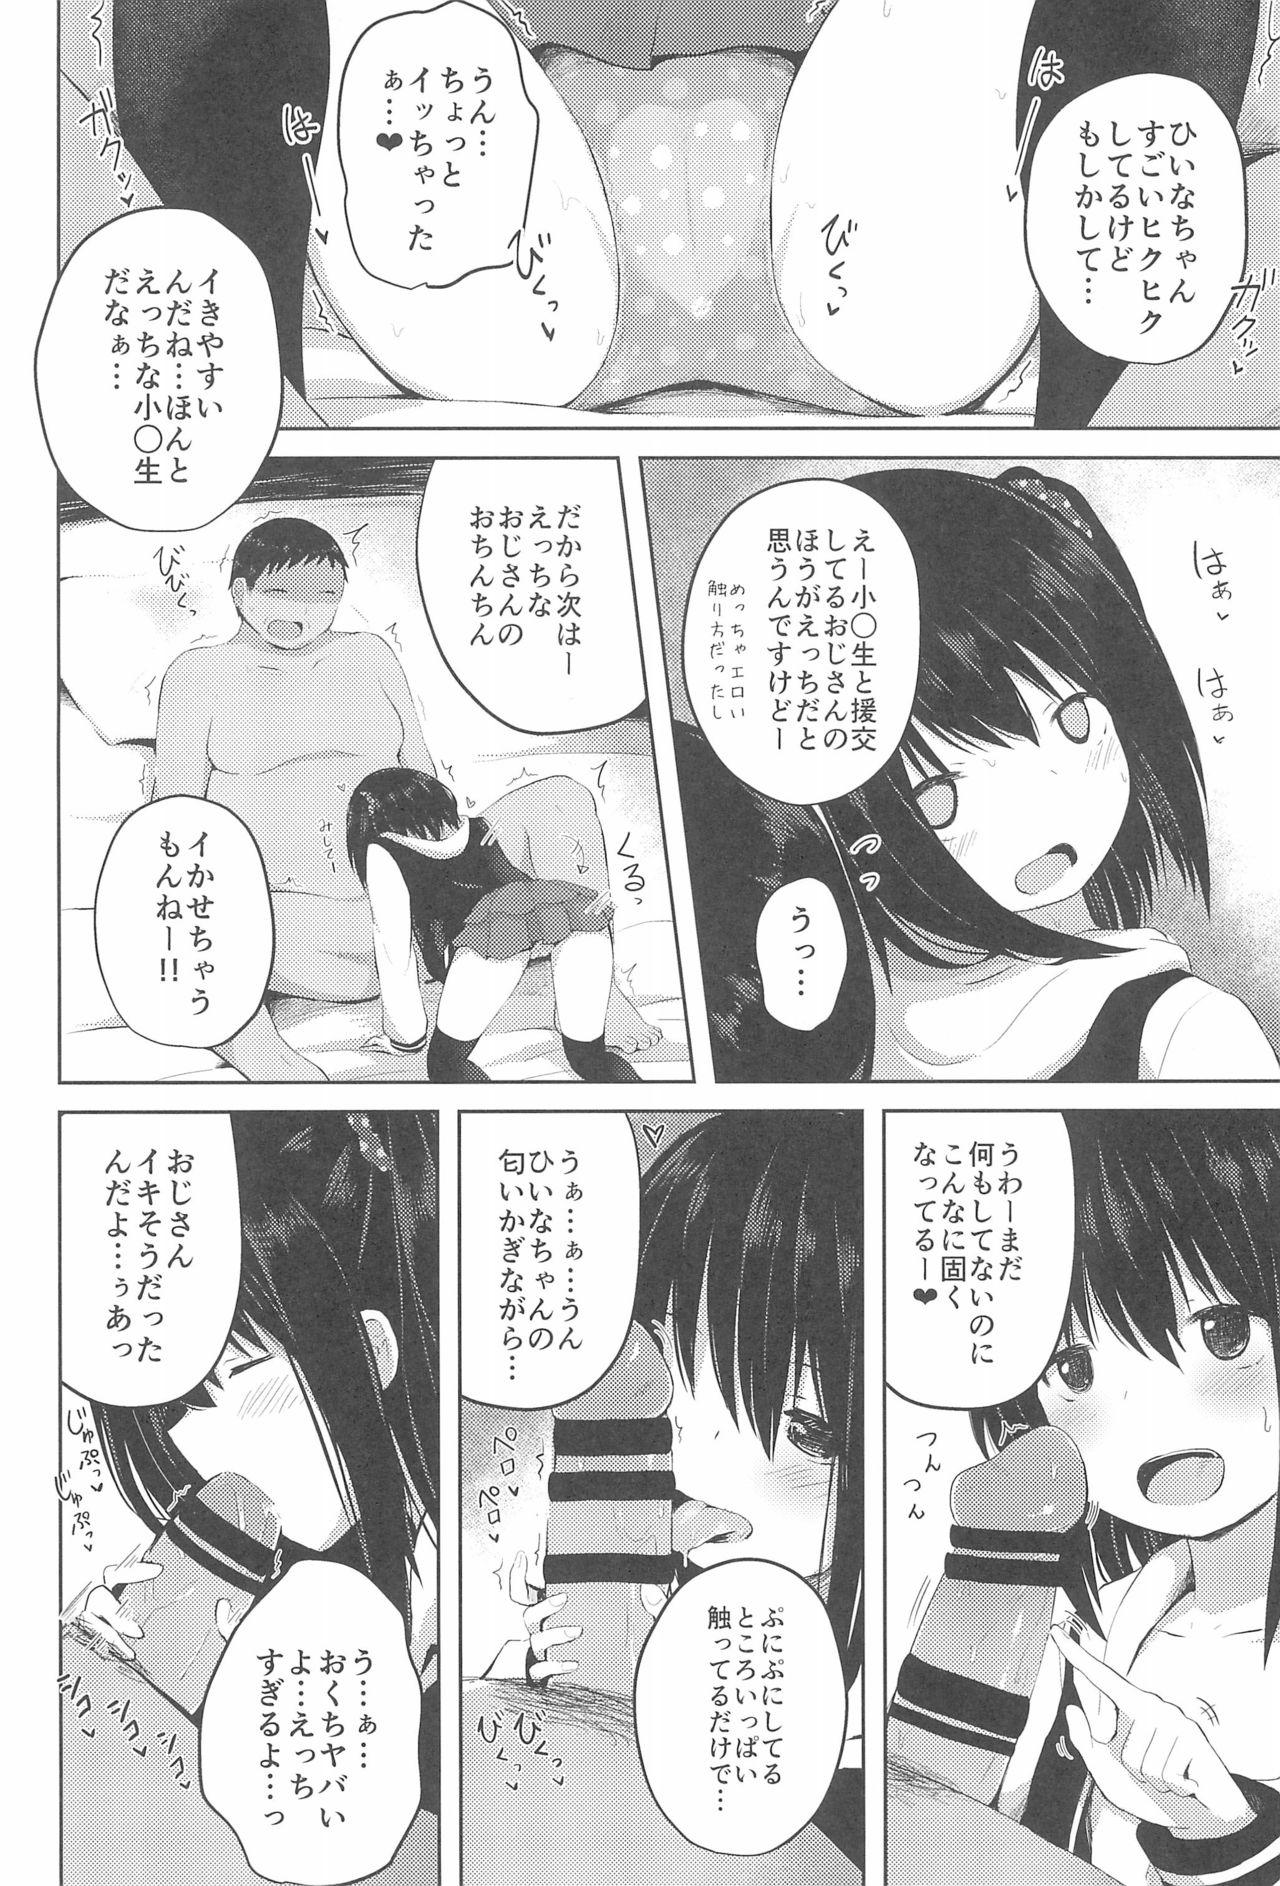 Mistress Shougakusei dakedo Shojo janai yo? - Original Furry - Page 8